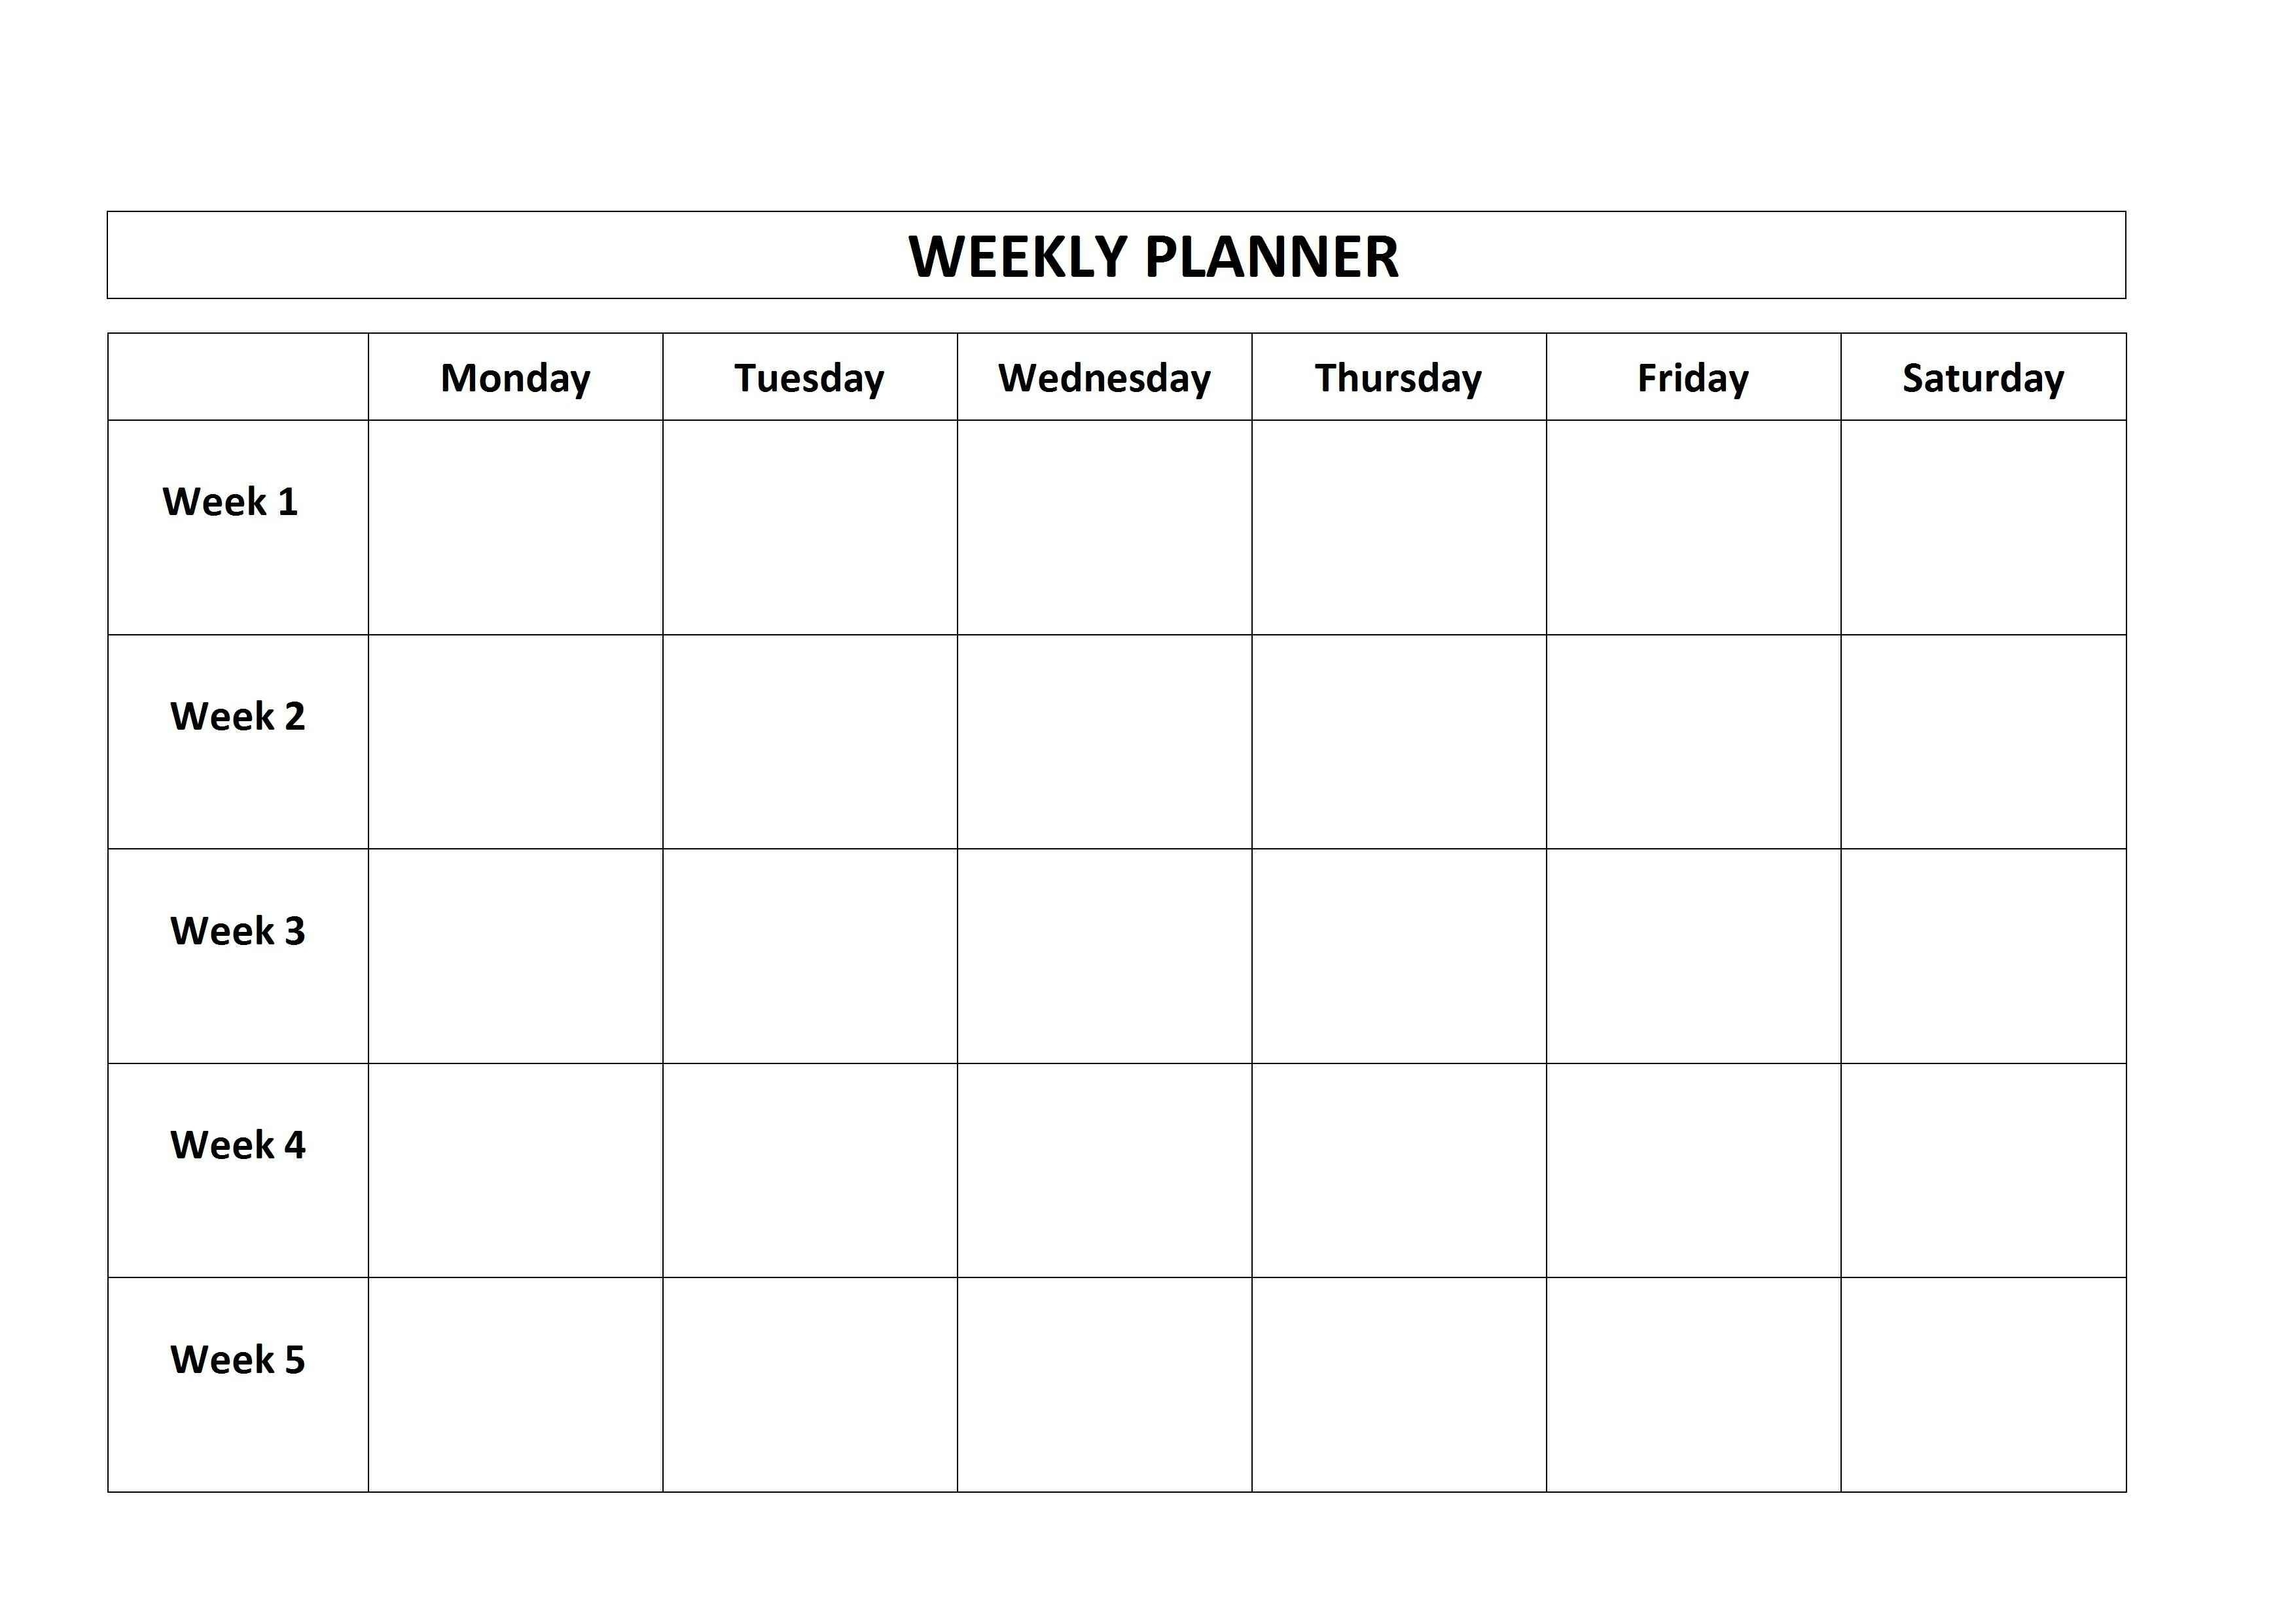 Monthly Calendar 5 Day Week | Calendar Design Ideas-5 Day Week Calendar Templates